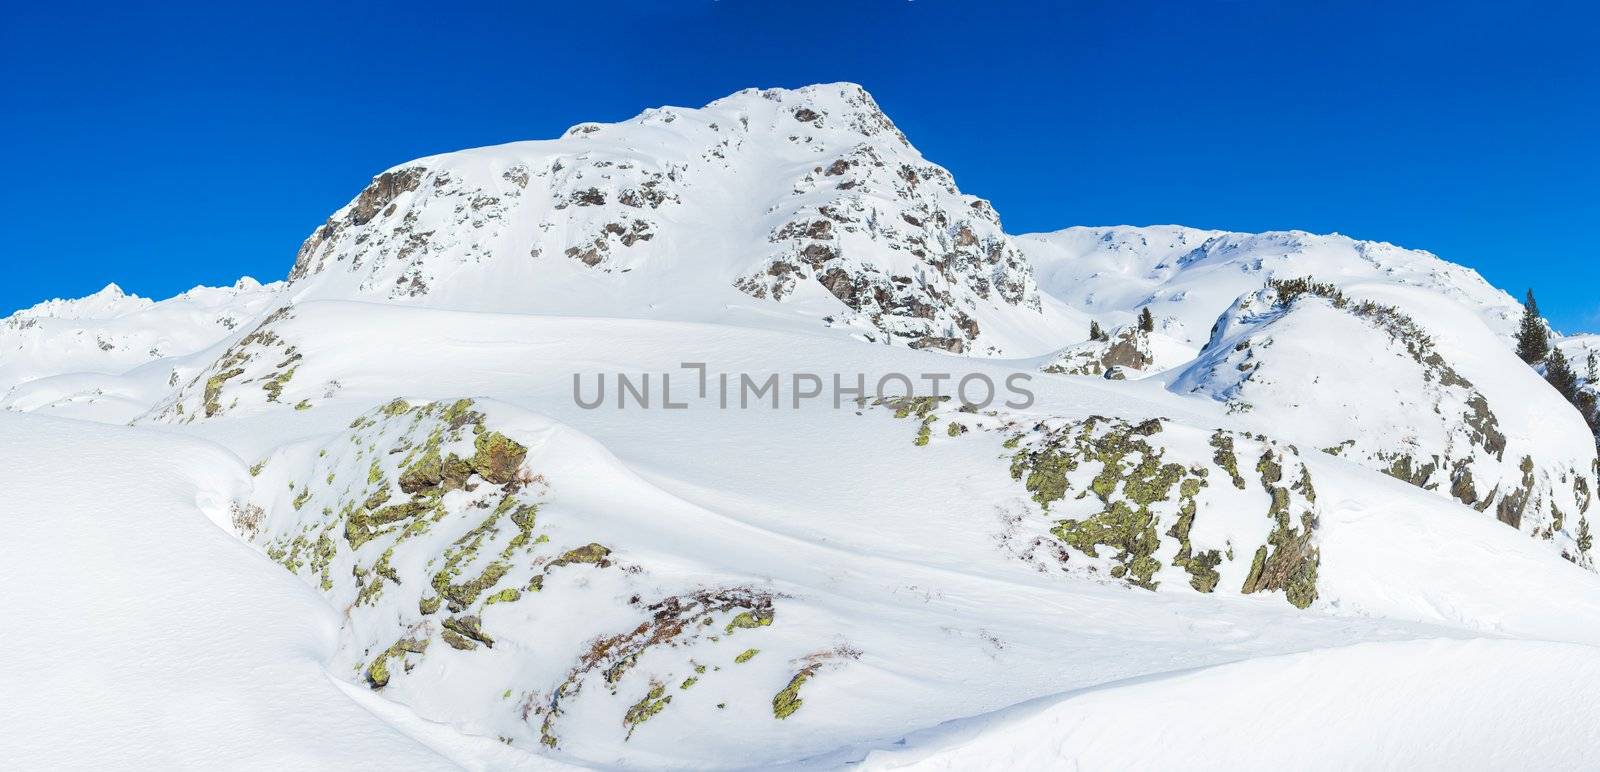 Alpine mountains under the snow in winter